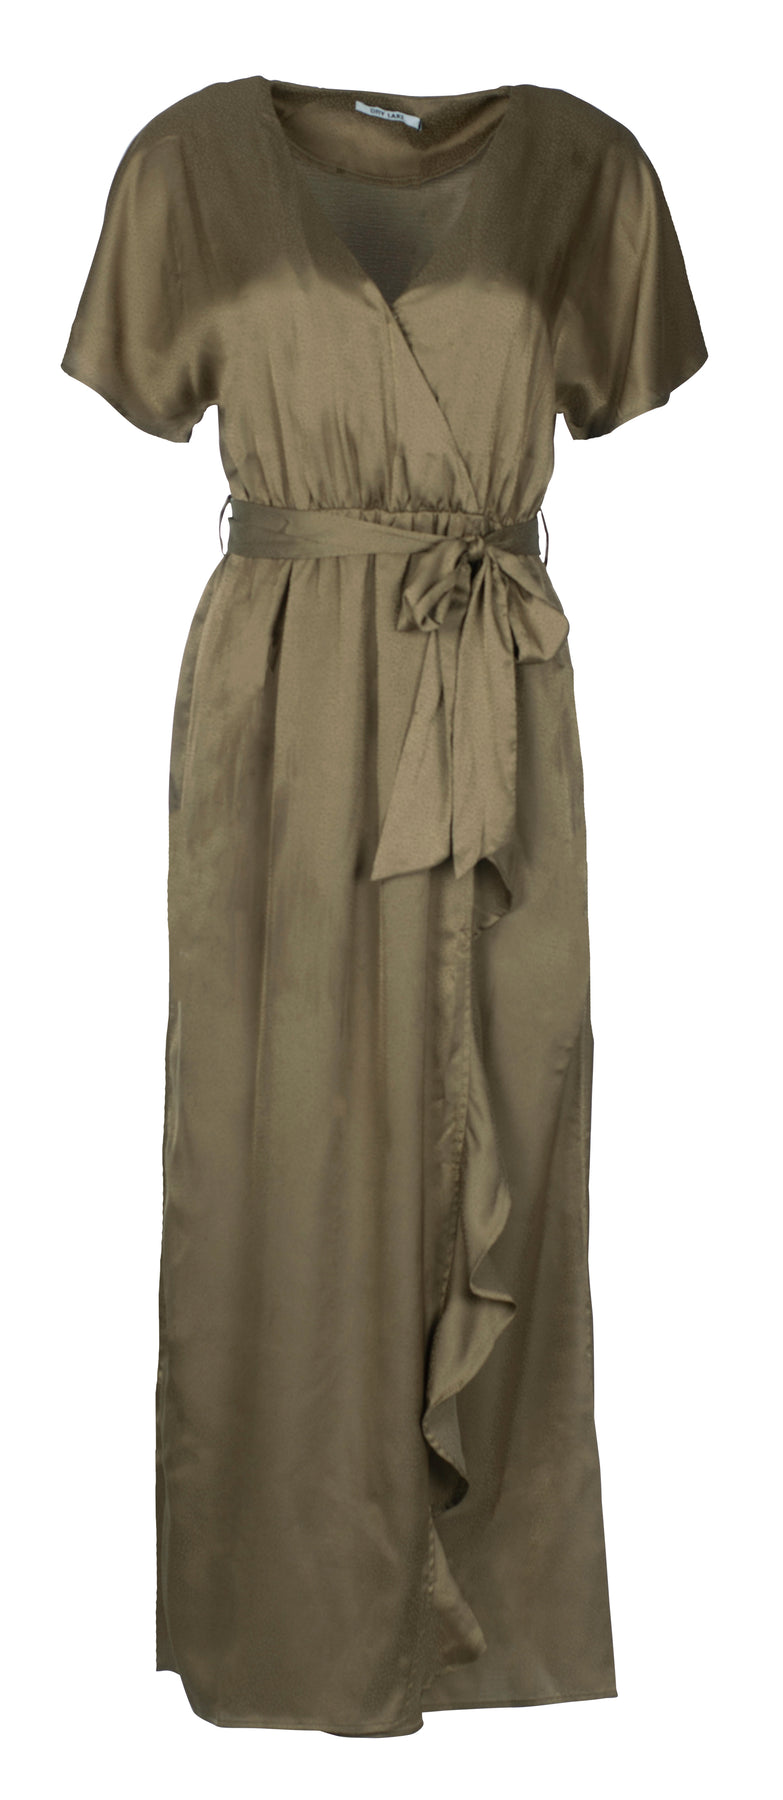 Bela Ankle Dress - Green Olive Konfetti Jacquard - Dry Lake - Kjoler - VILLOID.no